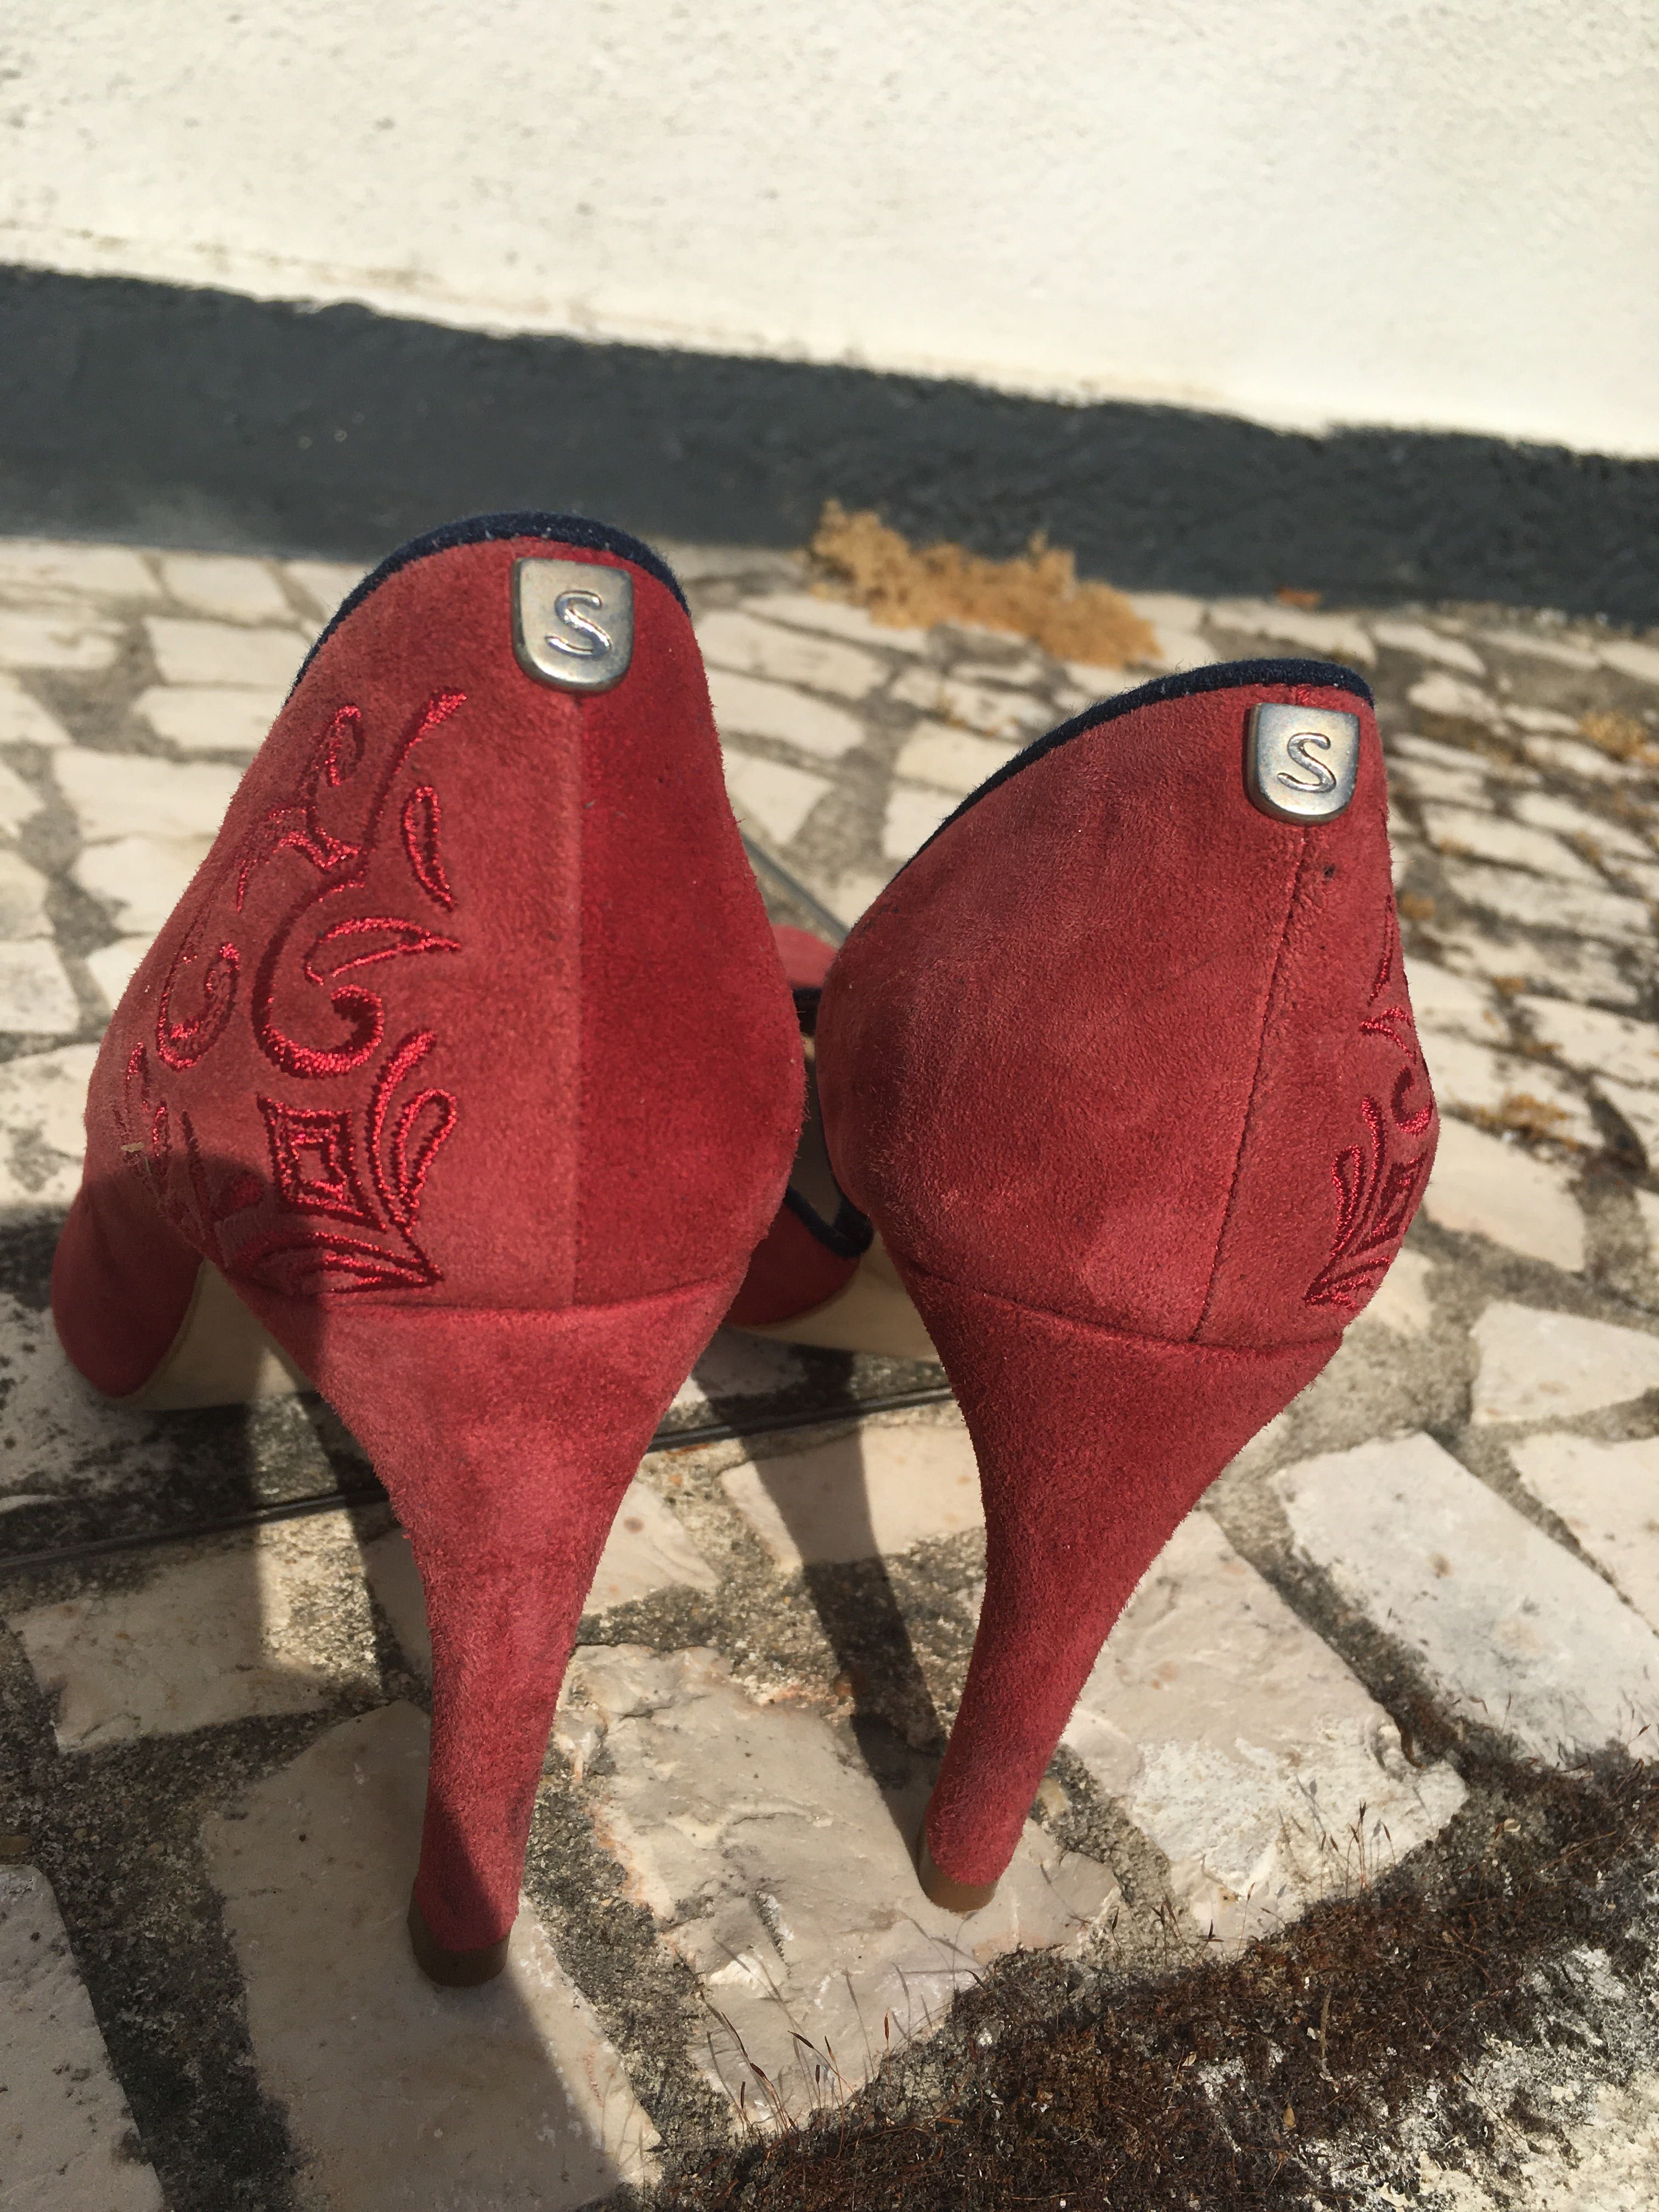 Sapatos SALSA, vermelhos, tamanho 37